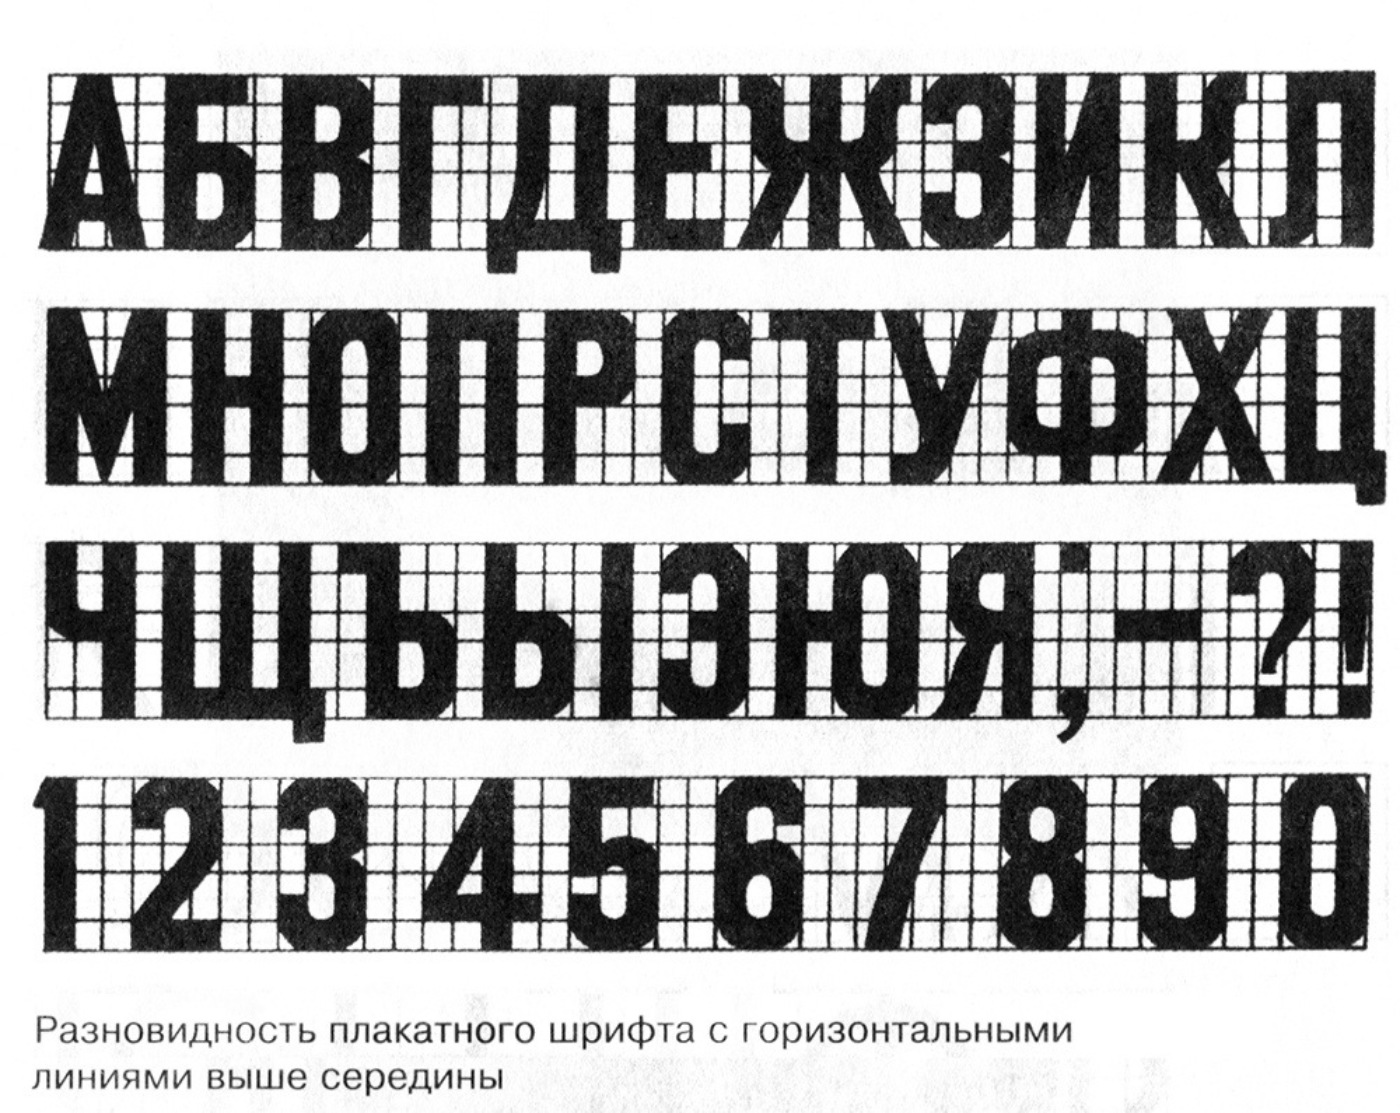 Гротеск шрифт это. Рубленный шрифт. Печатный шрифт. Плакатный шрифт. Плакатные шрифты русские.